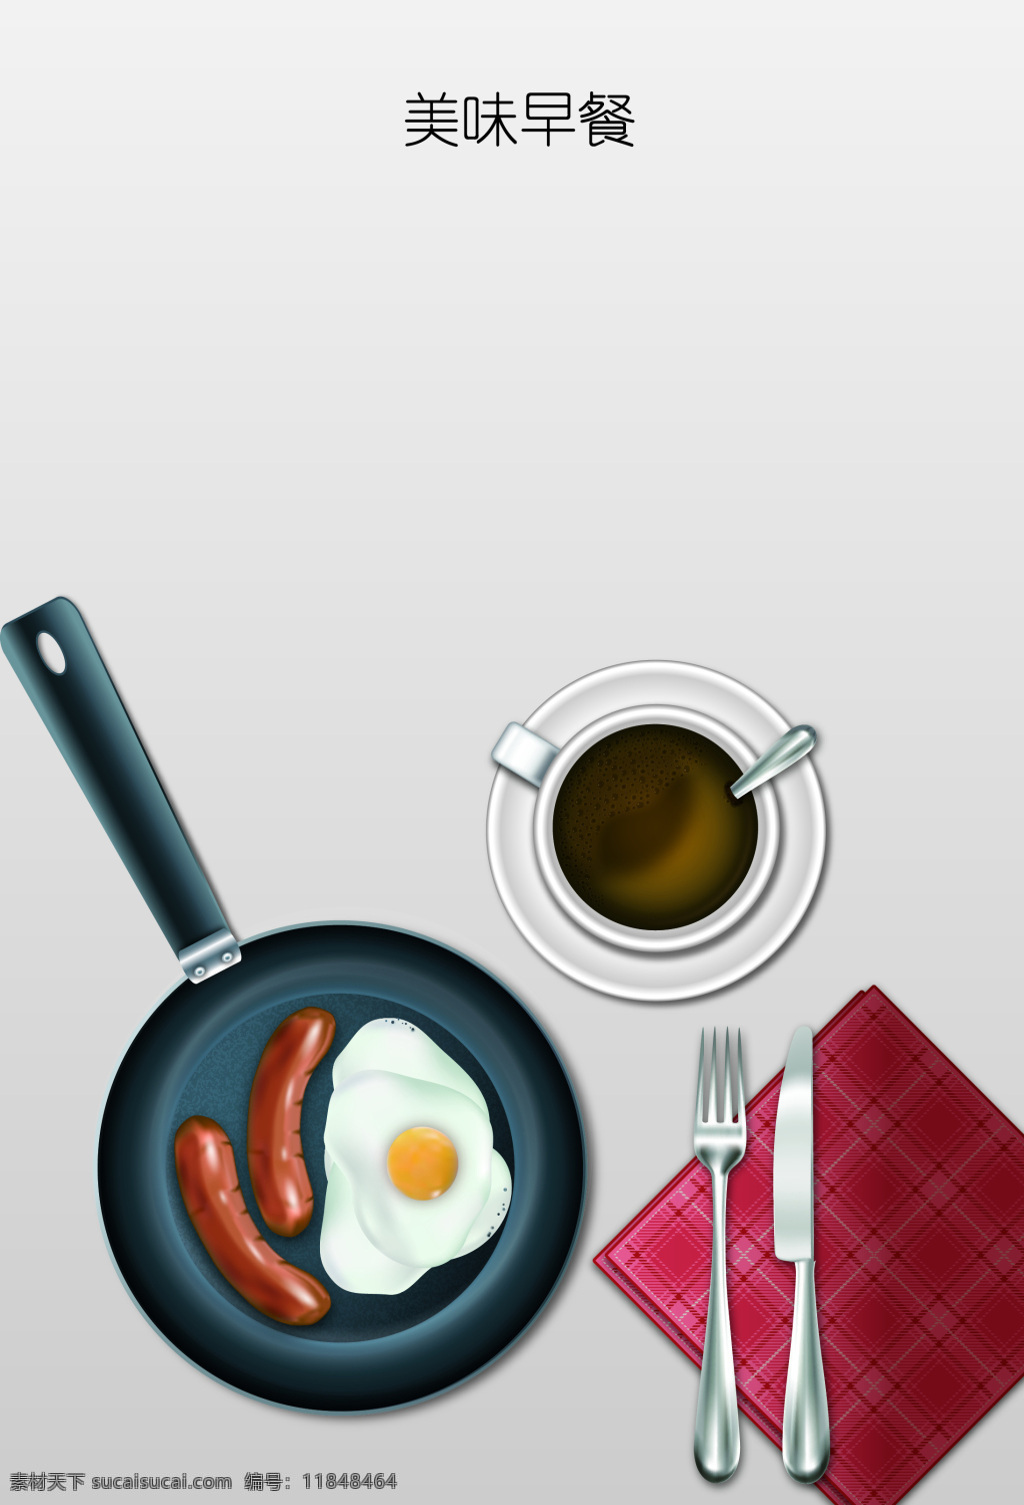 美味 香肠 煎蛋 咖啡 西式 早餐 海报 背景 矢量 幸福 卡通 童趣 手绘